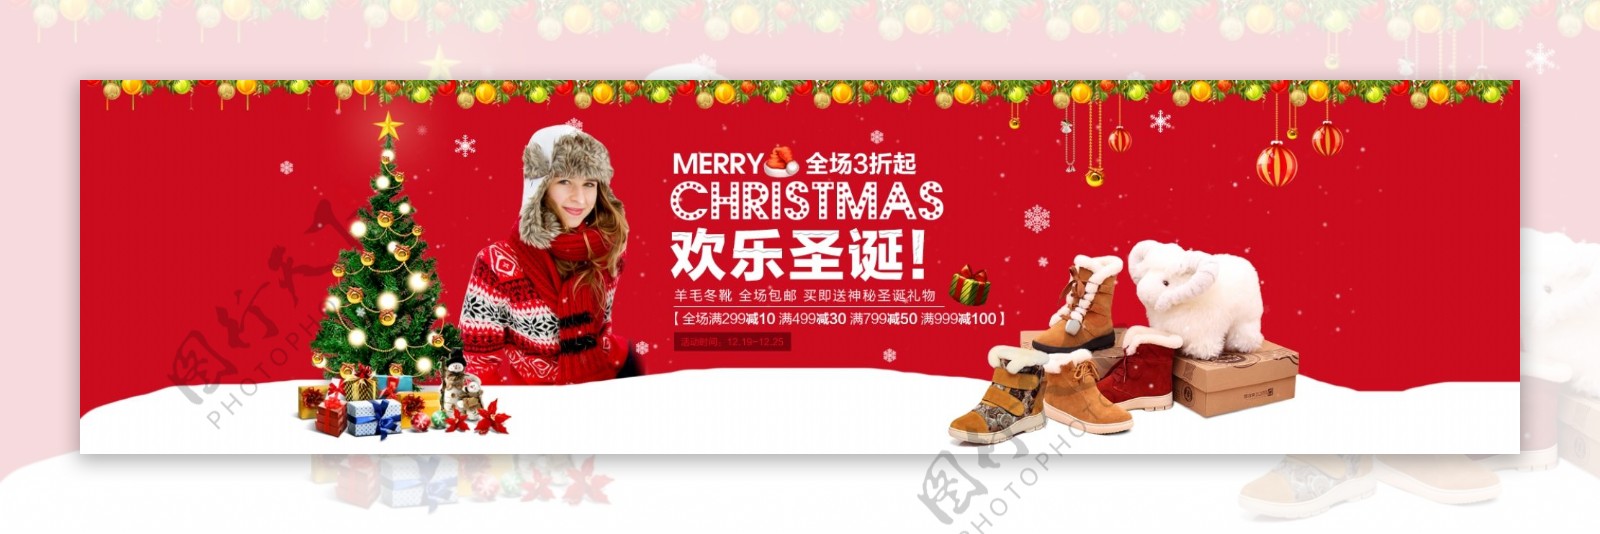 女鞋欢乐圣诞促销海报